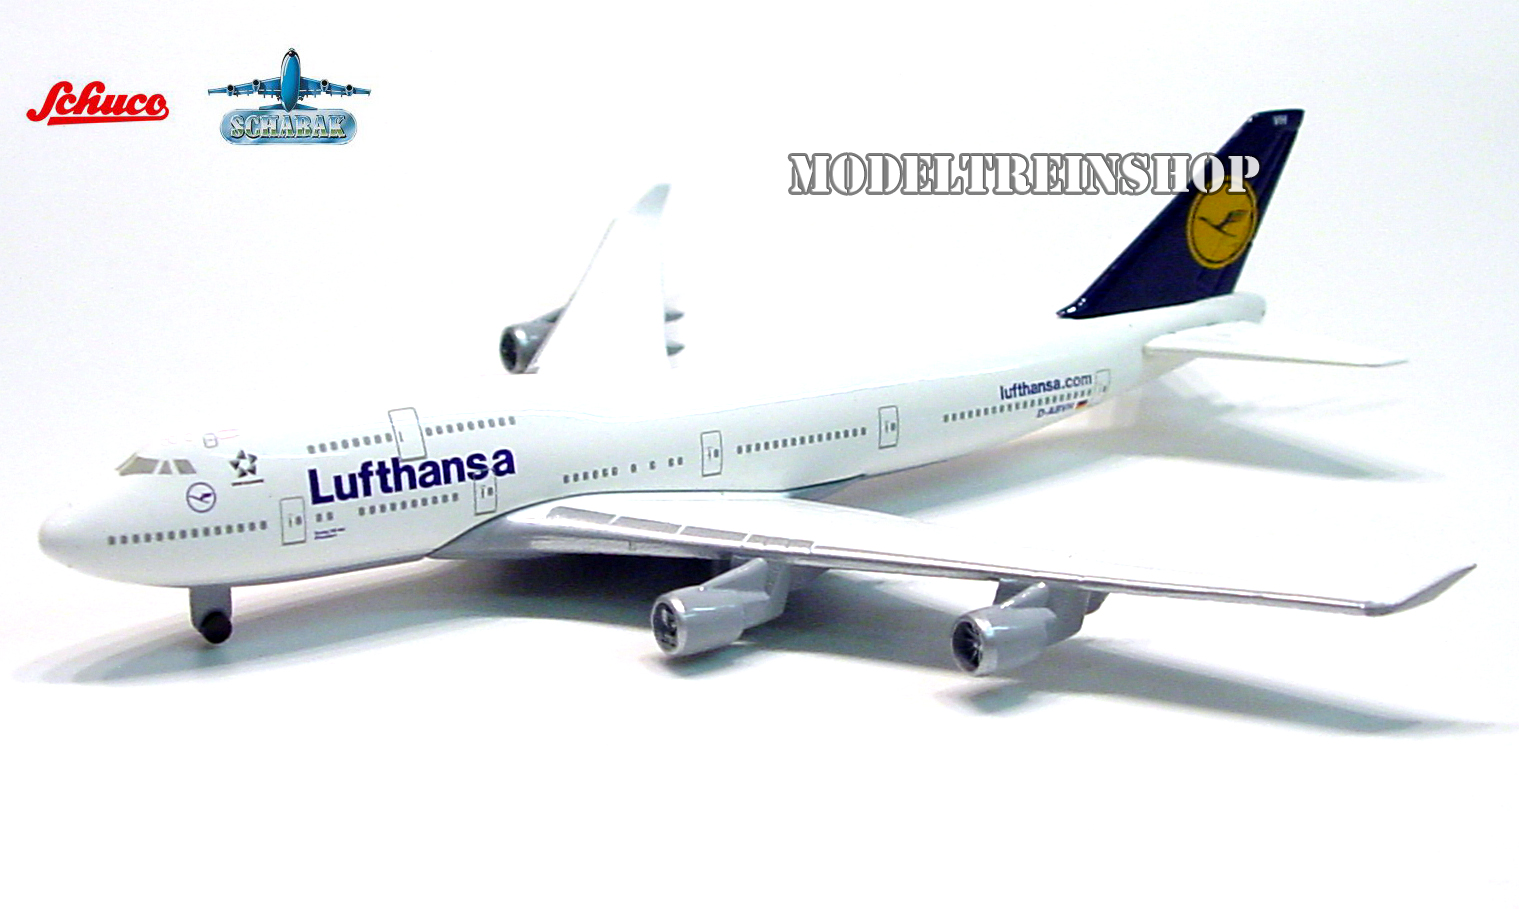 Schabak 3554135 Boeing 747 400 Lufthansa - Modeltreinshop